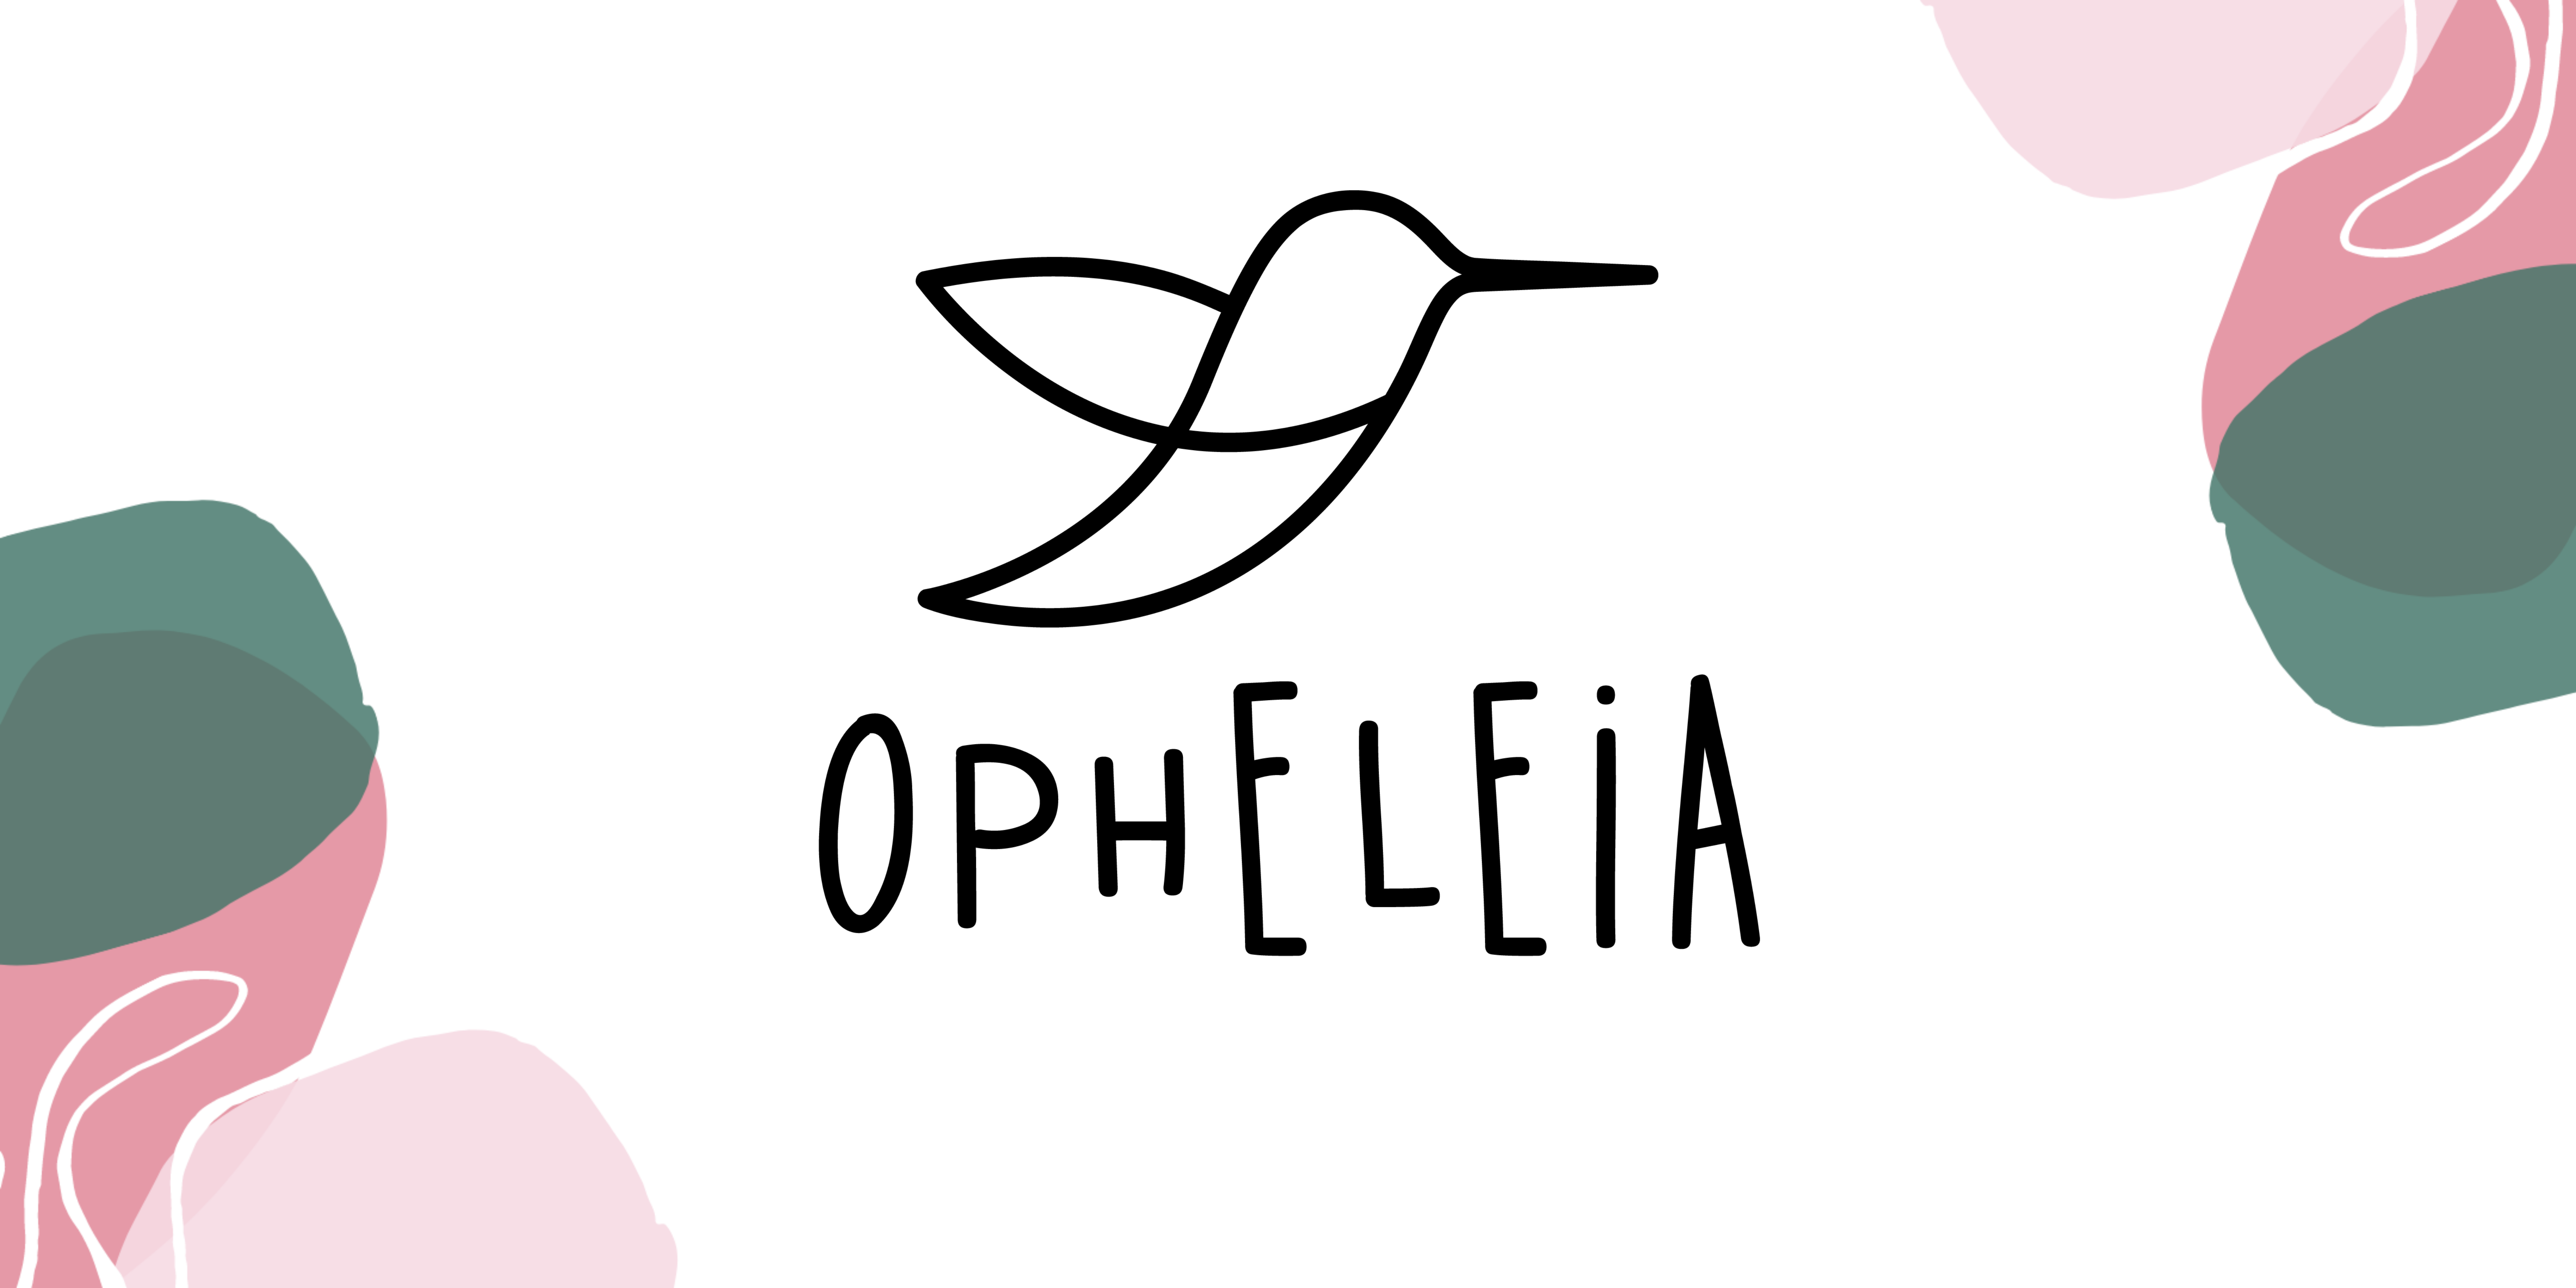 Bannière Opheleia Accueil